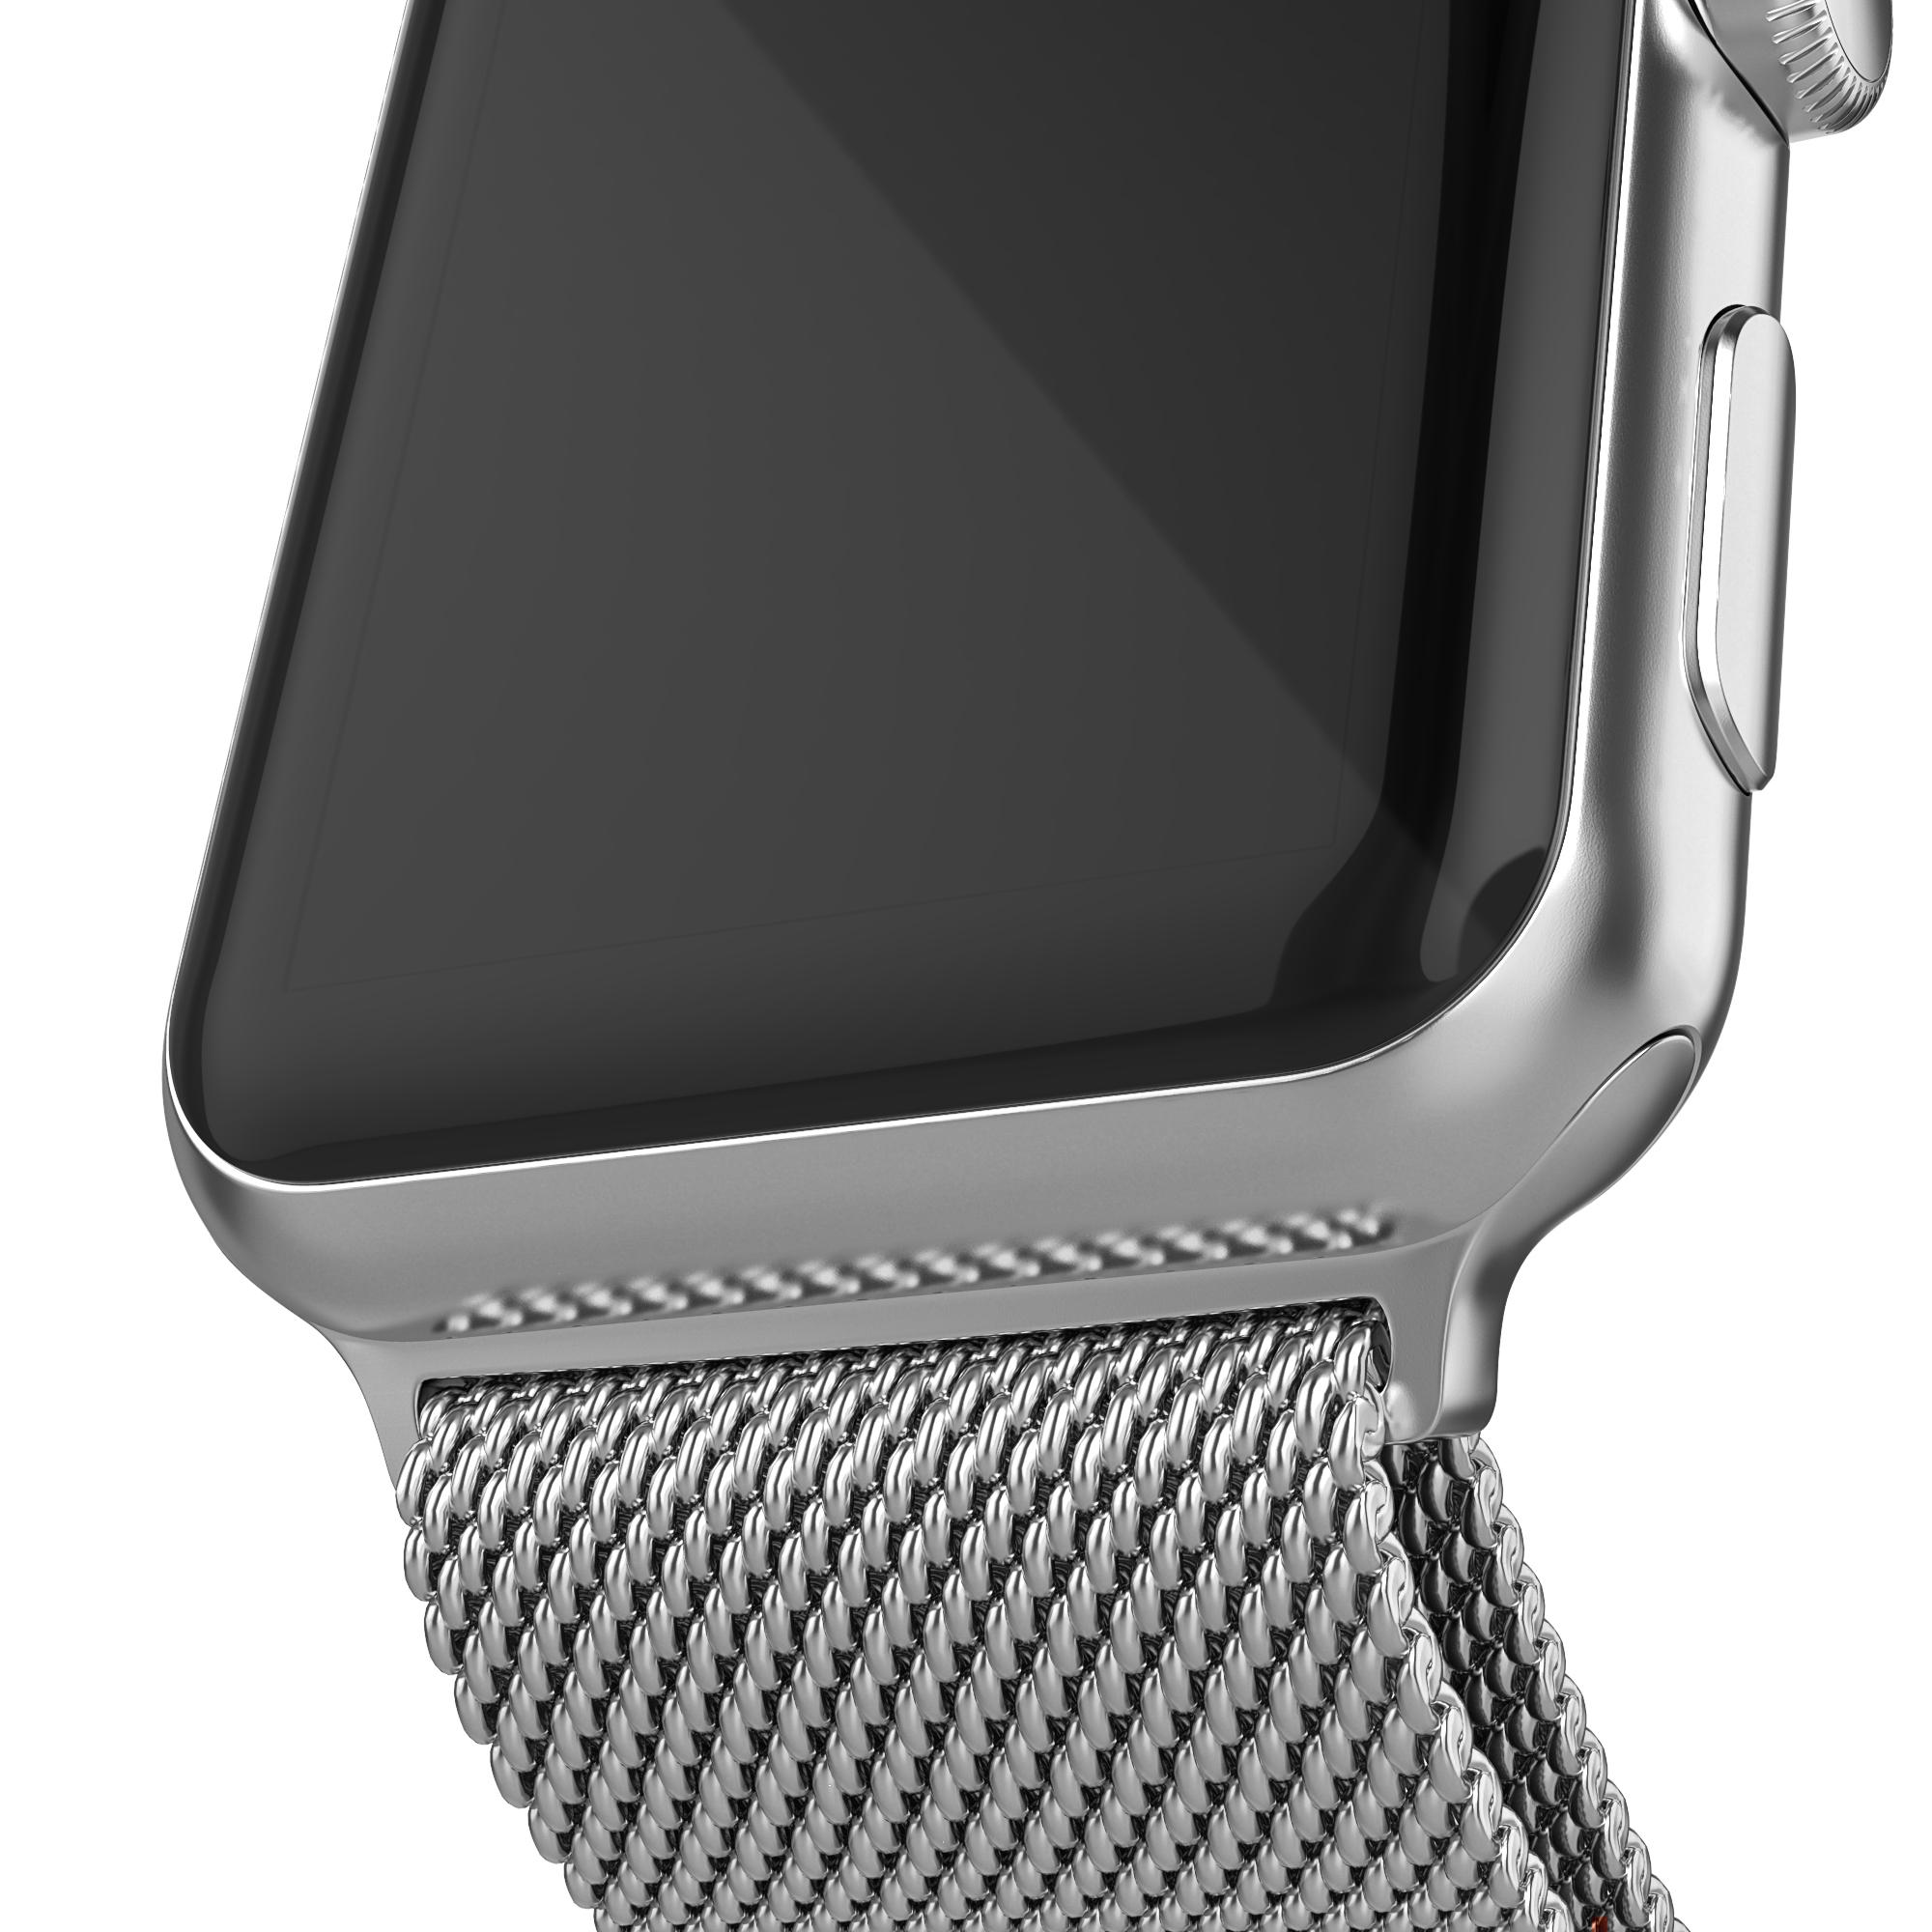 Armbånd Milanese Loop Apple Watch 38/40/41 mm sølv